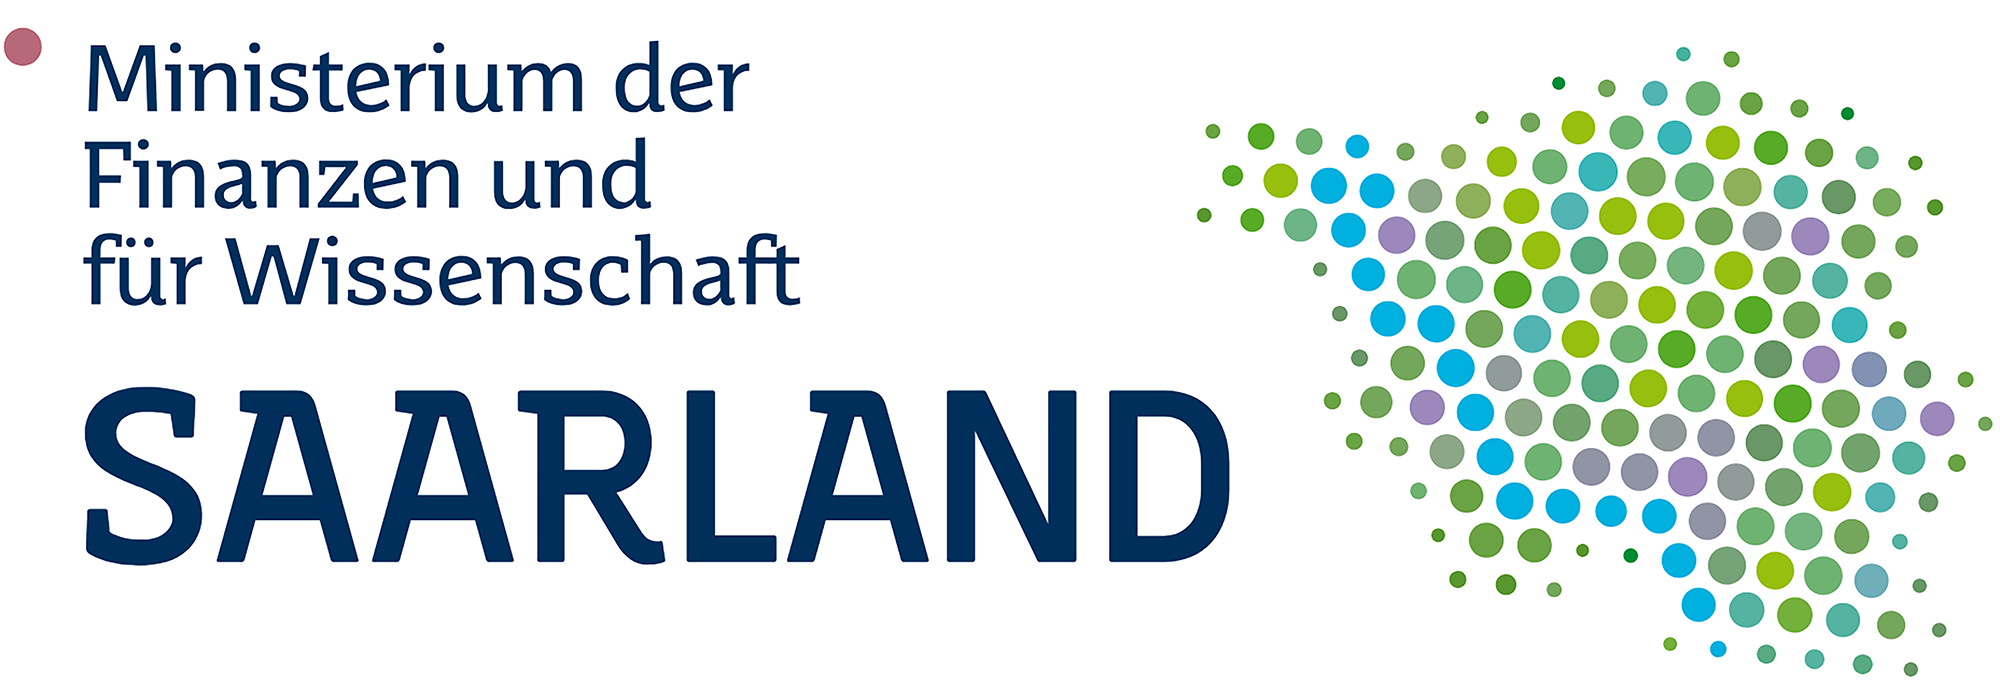 Logo Ministerium der Finanzen und für Wissenschaft Saarland